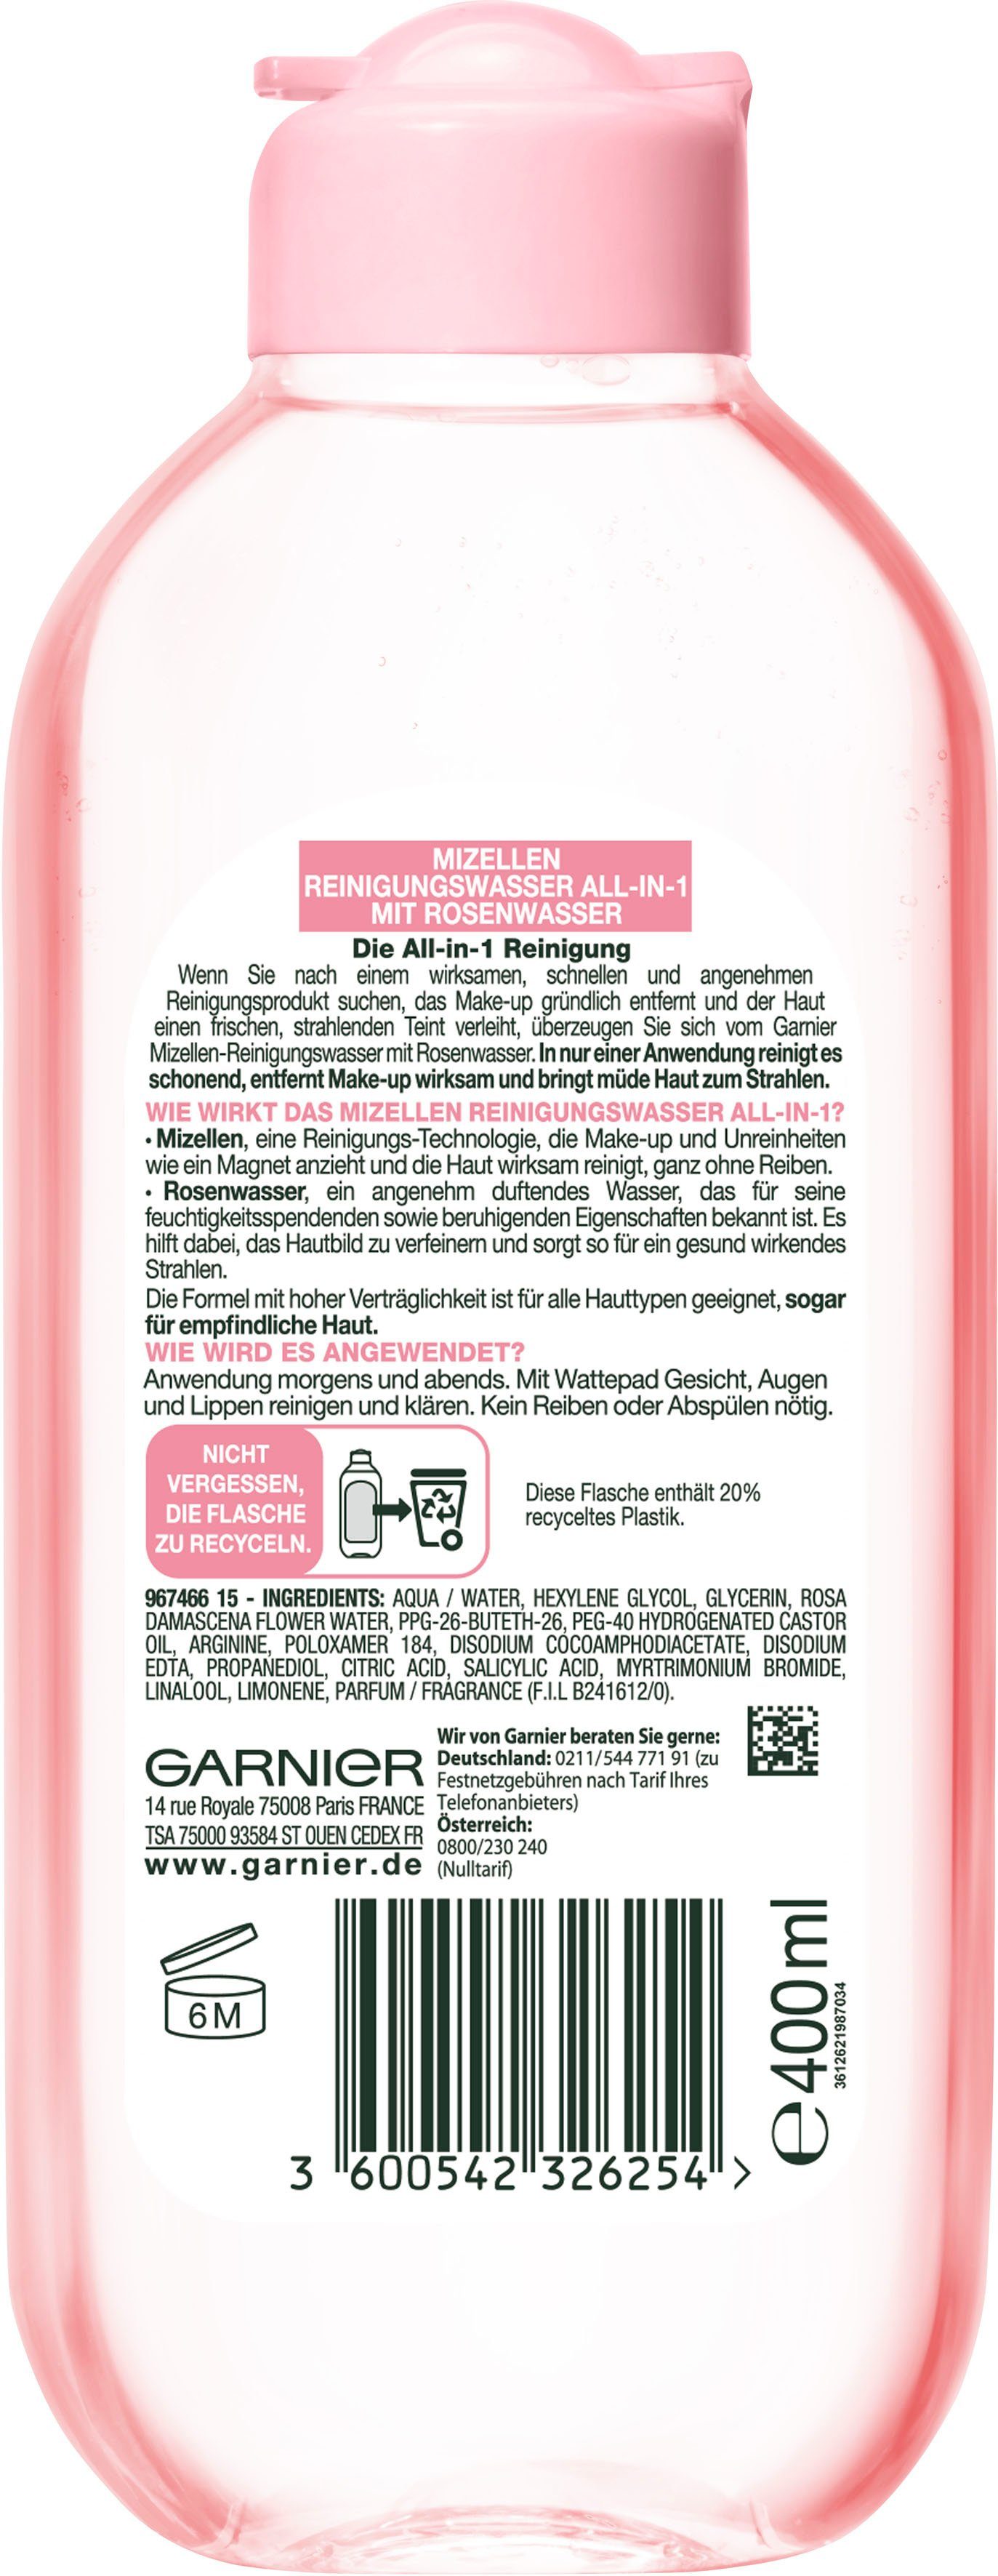 GARNIER All-in-1, Reinigungswasser Mizellen Rosenwasser mit Gesichtswasser